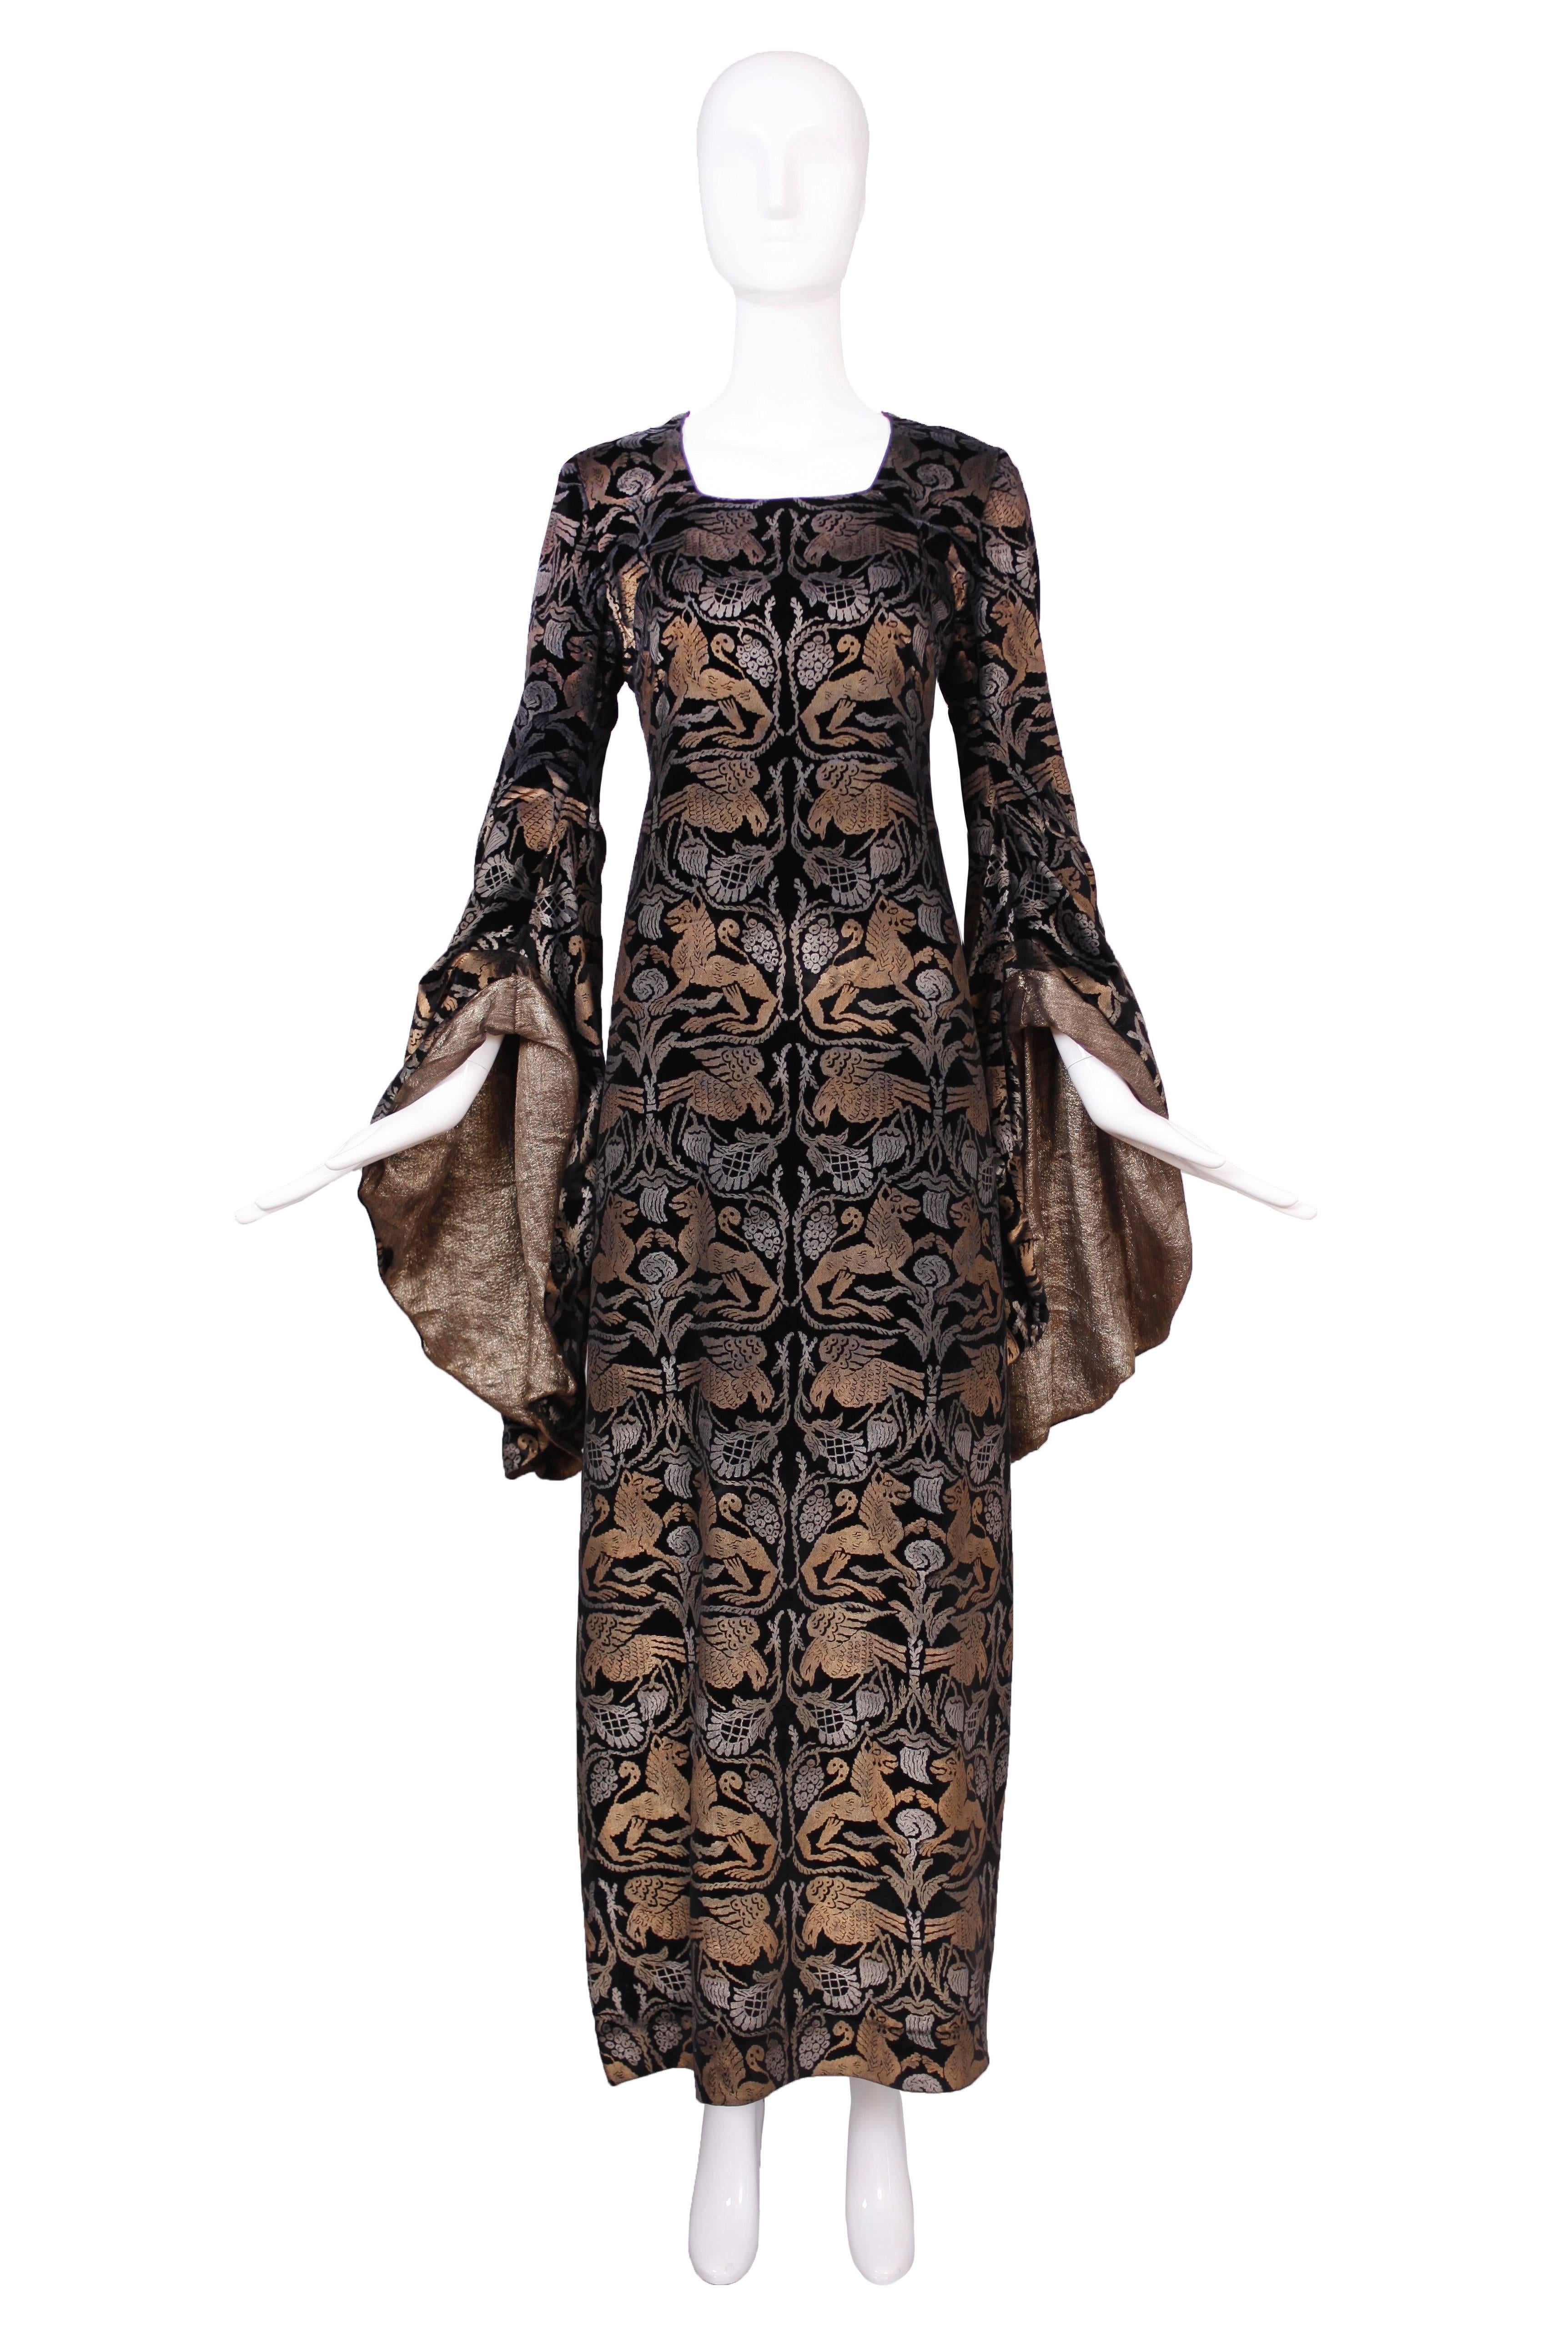 Couture-Samtkleid von Maria Gallenga aus den 1920er Jahren, bedruckt mit einem schablonierten, sich wiederholenden Muster aus Silber und Kupfer/Gold, das Fabelwesen darstellt. Das bodenlange Kleid hat dramatische Trompetenärmel mit goldenem